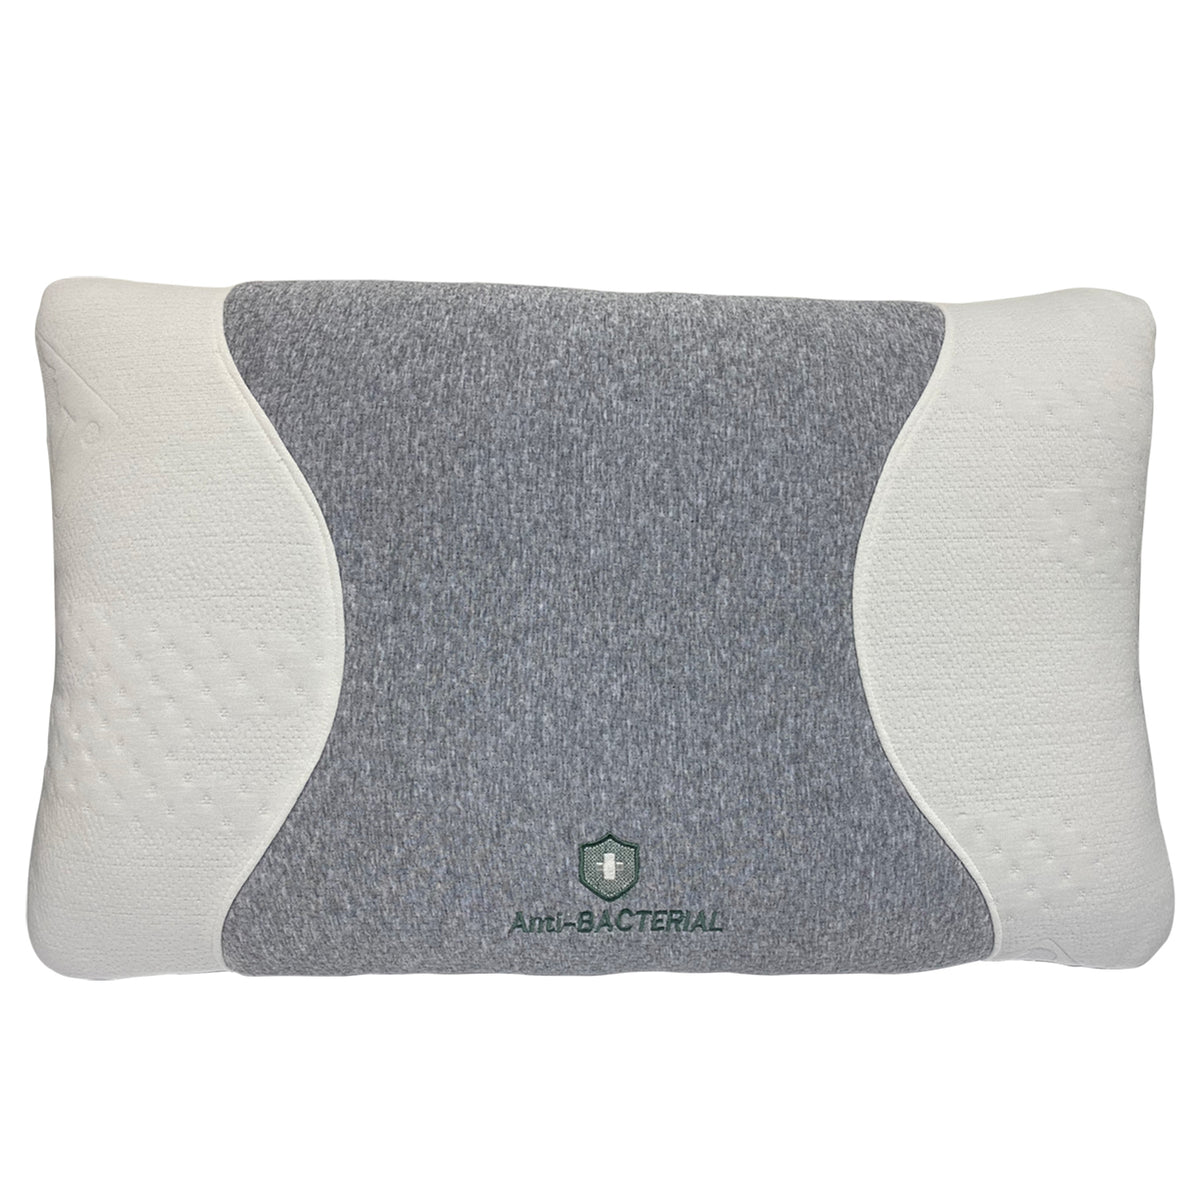 石墨烯抗菌枕 - 枕頭 (PW209000S)